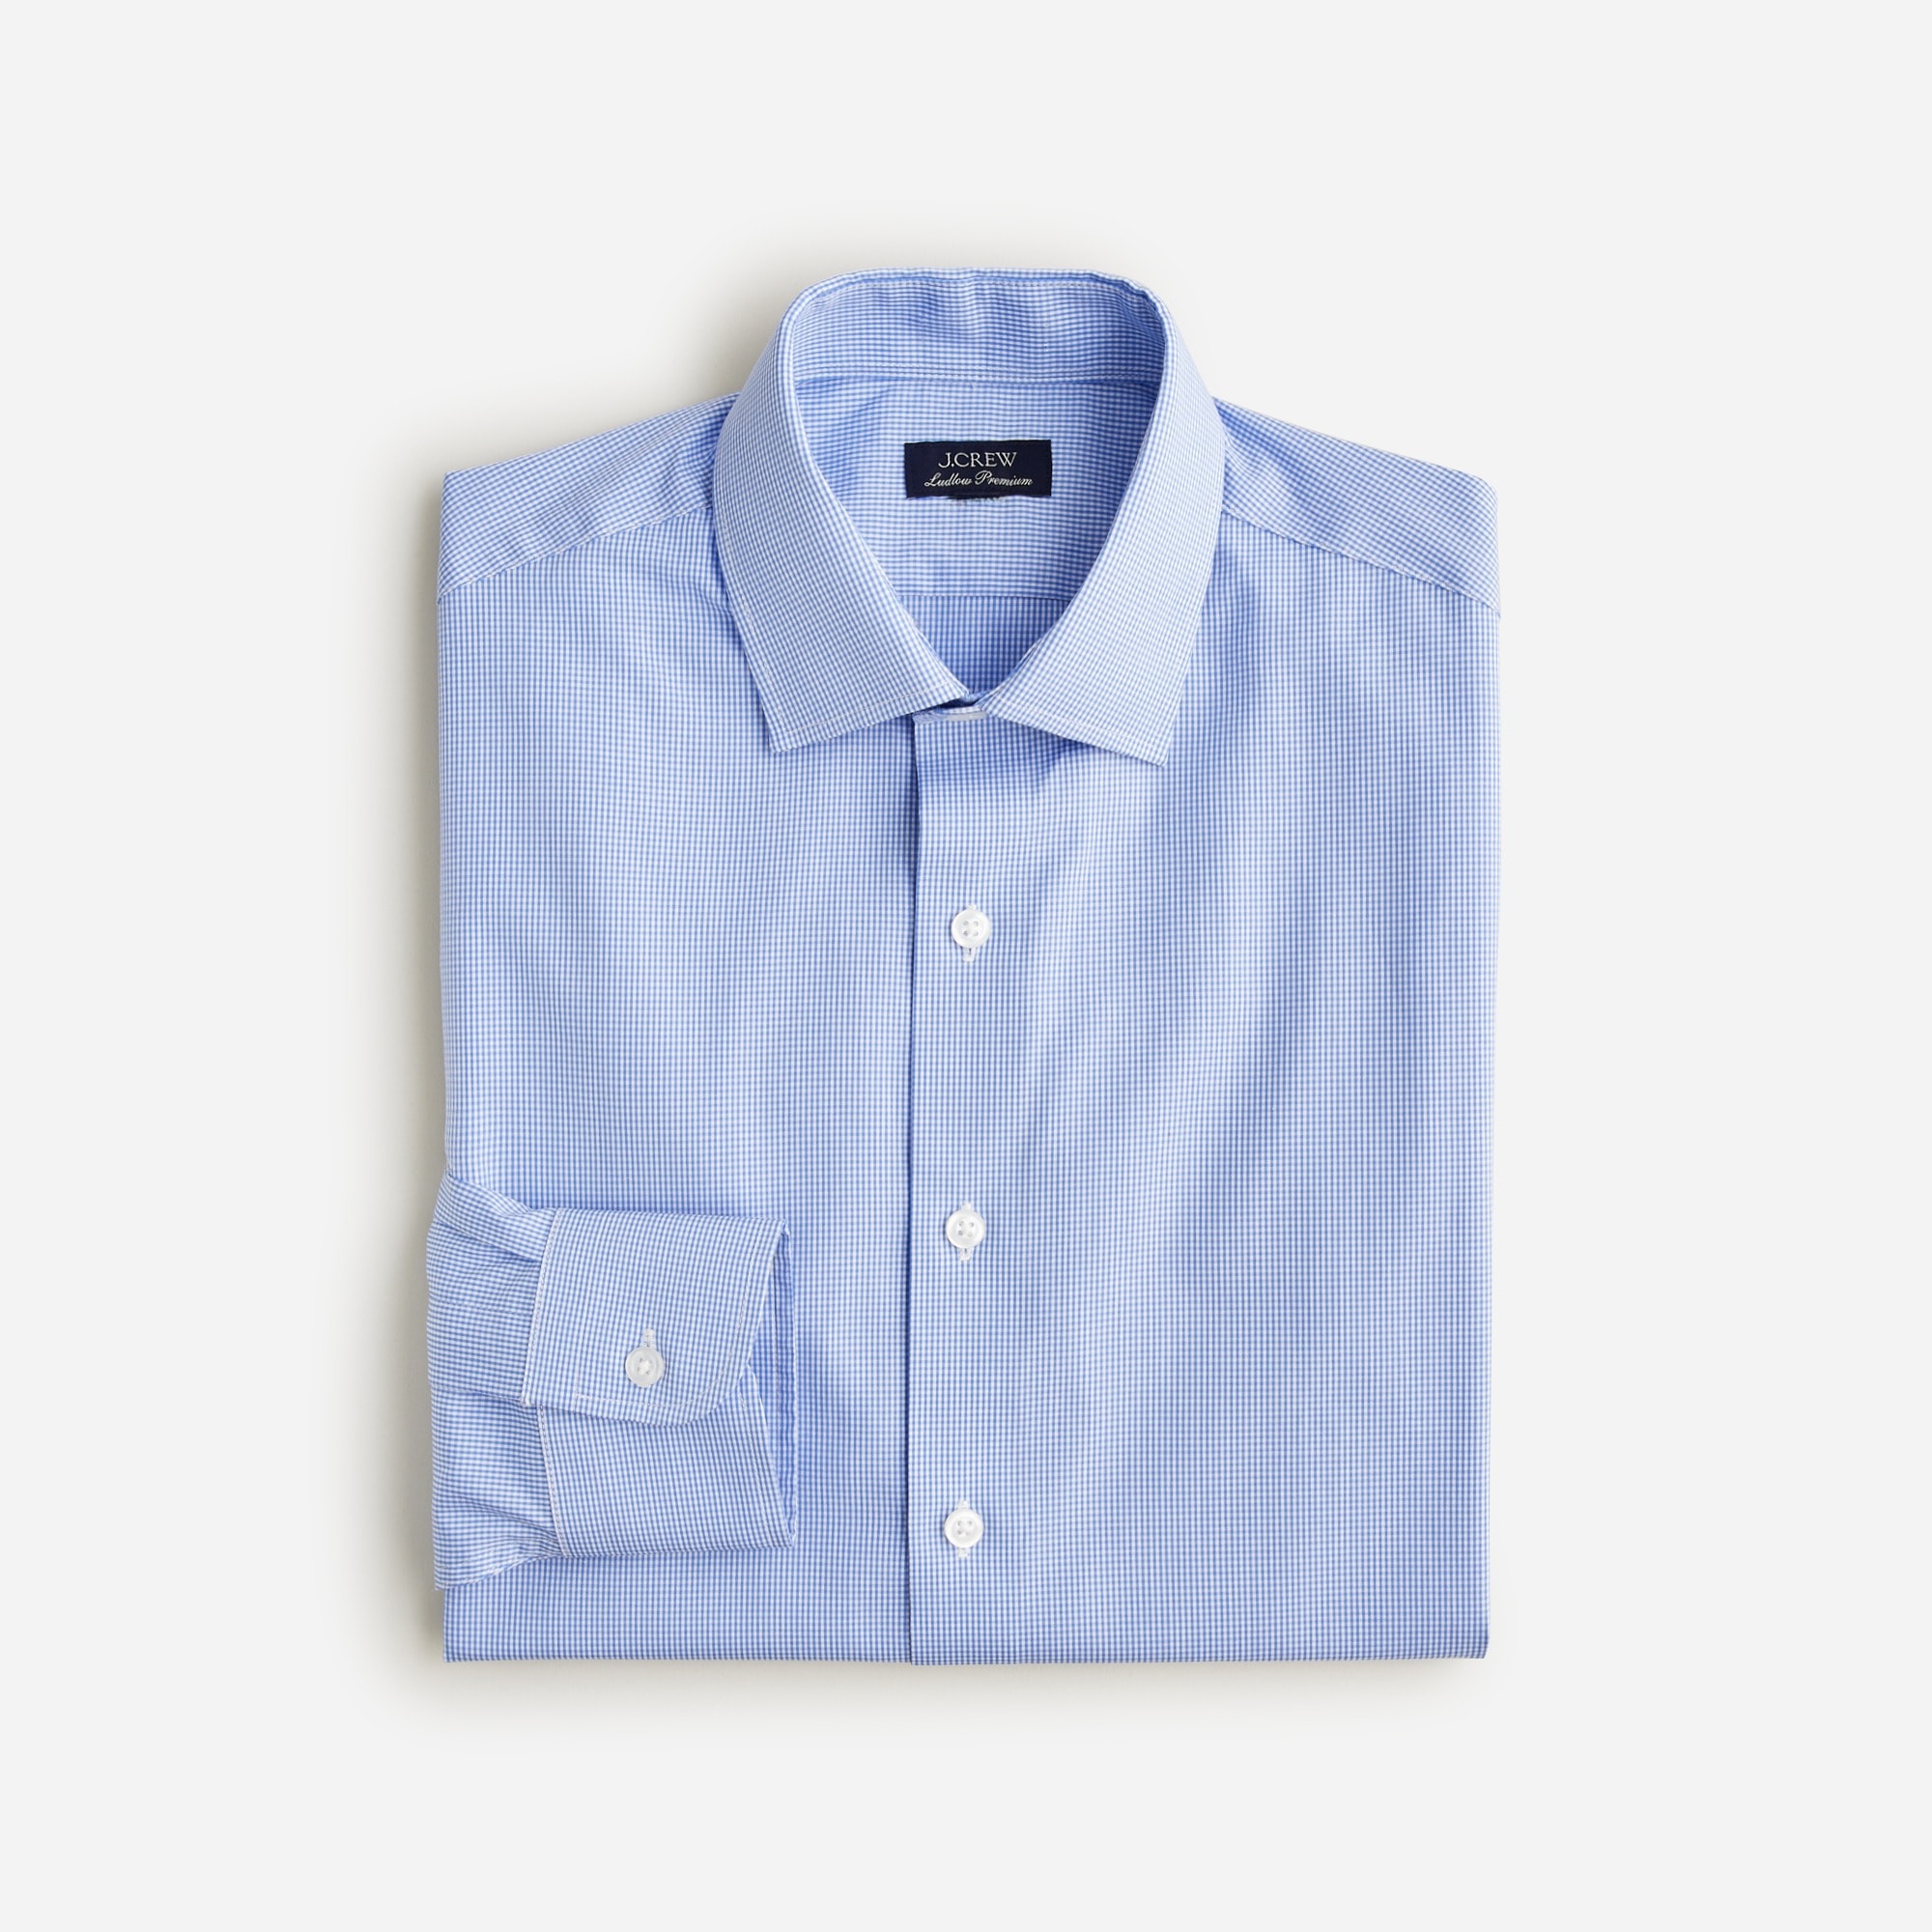 mens Ludlow Premium fine cotton dress shirt